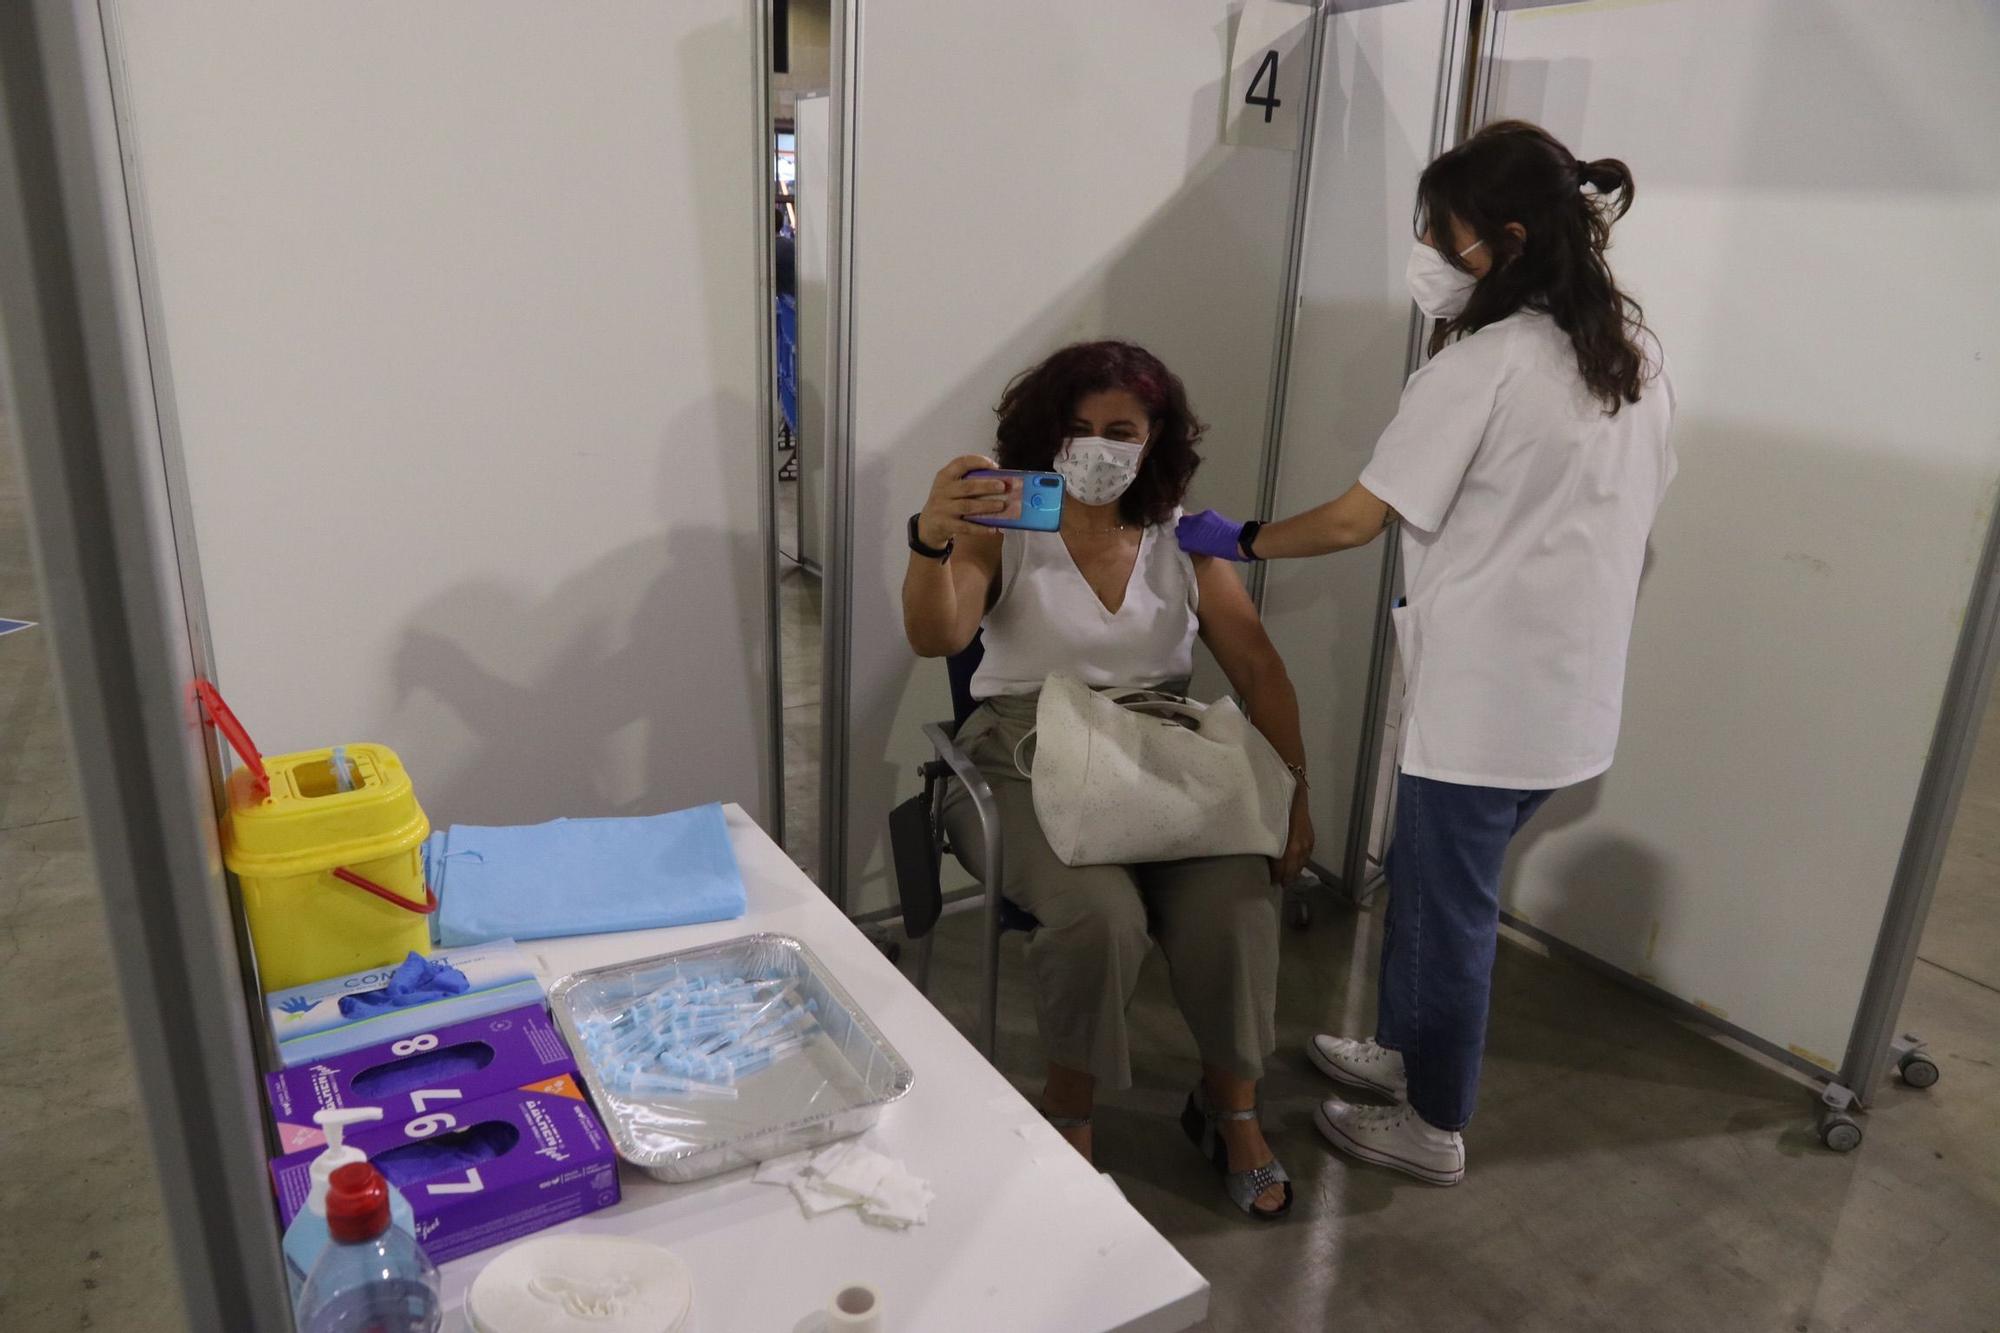 Vacunación masiva con AstraZeneca en Málaga